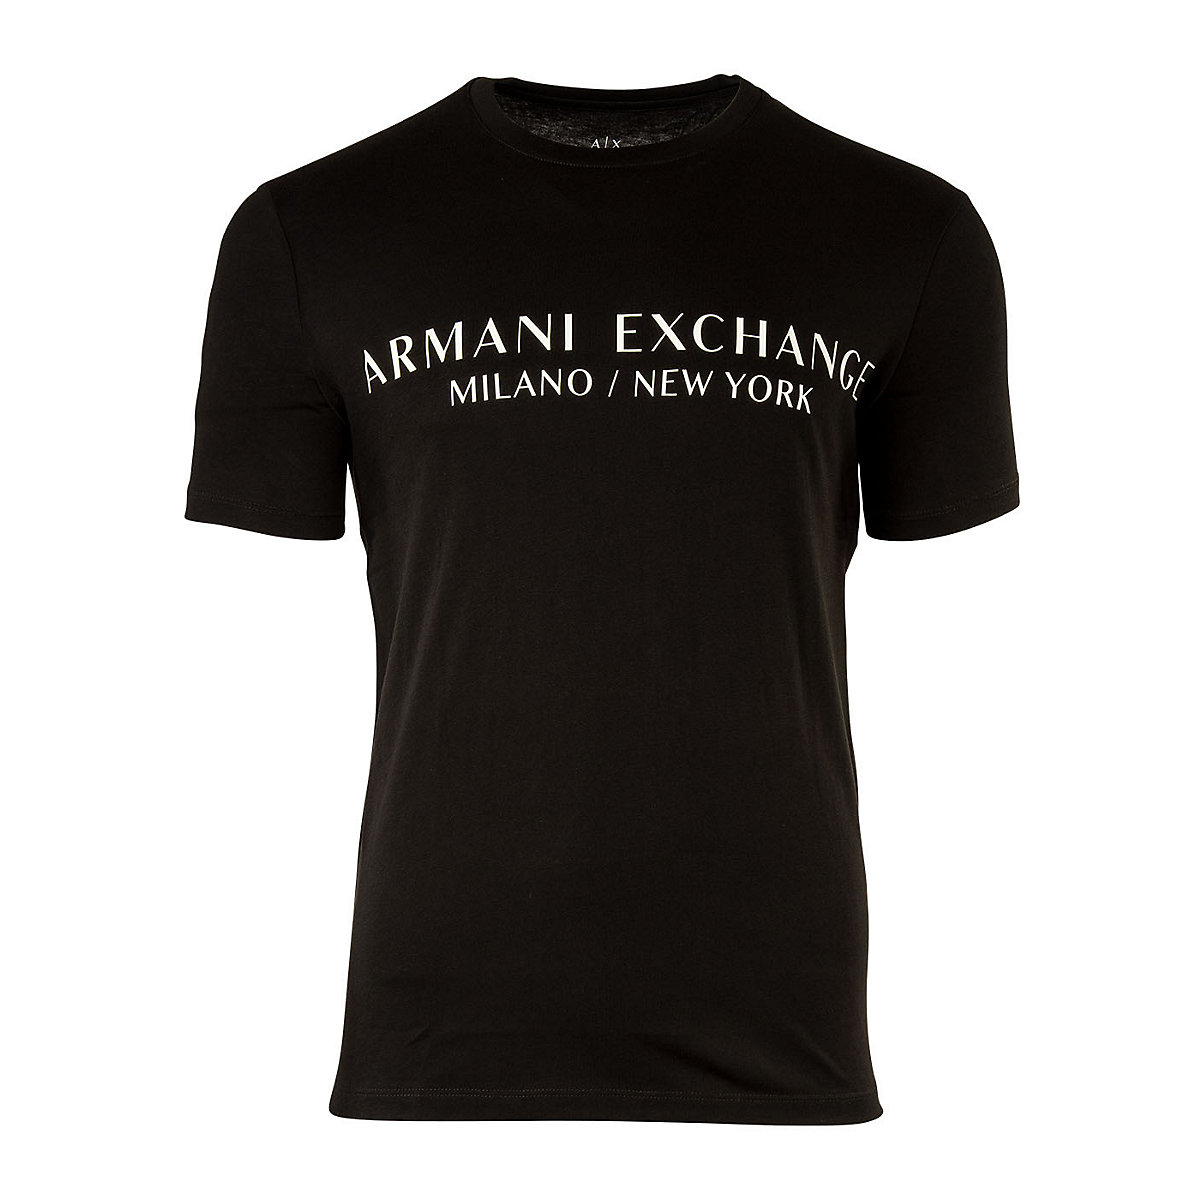 ARMANI EXCHANGE A|X Herren T-Shirt Schriftzug Rundhals Cotton Stretch T-Shirts schwarz